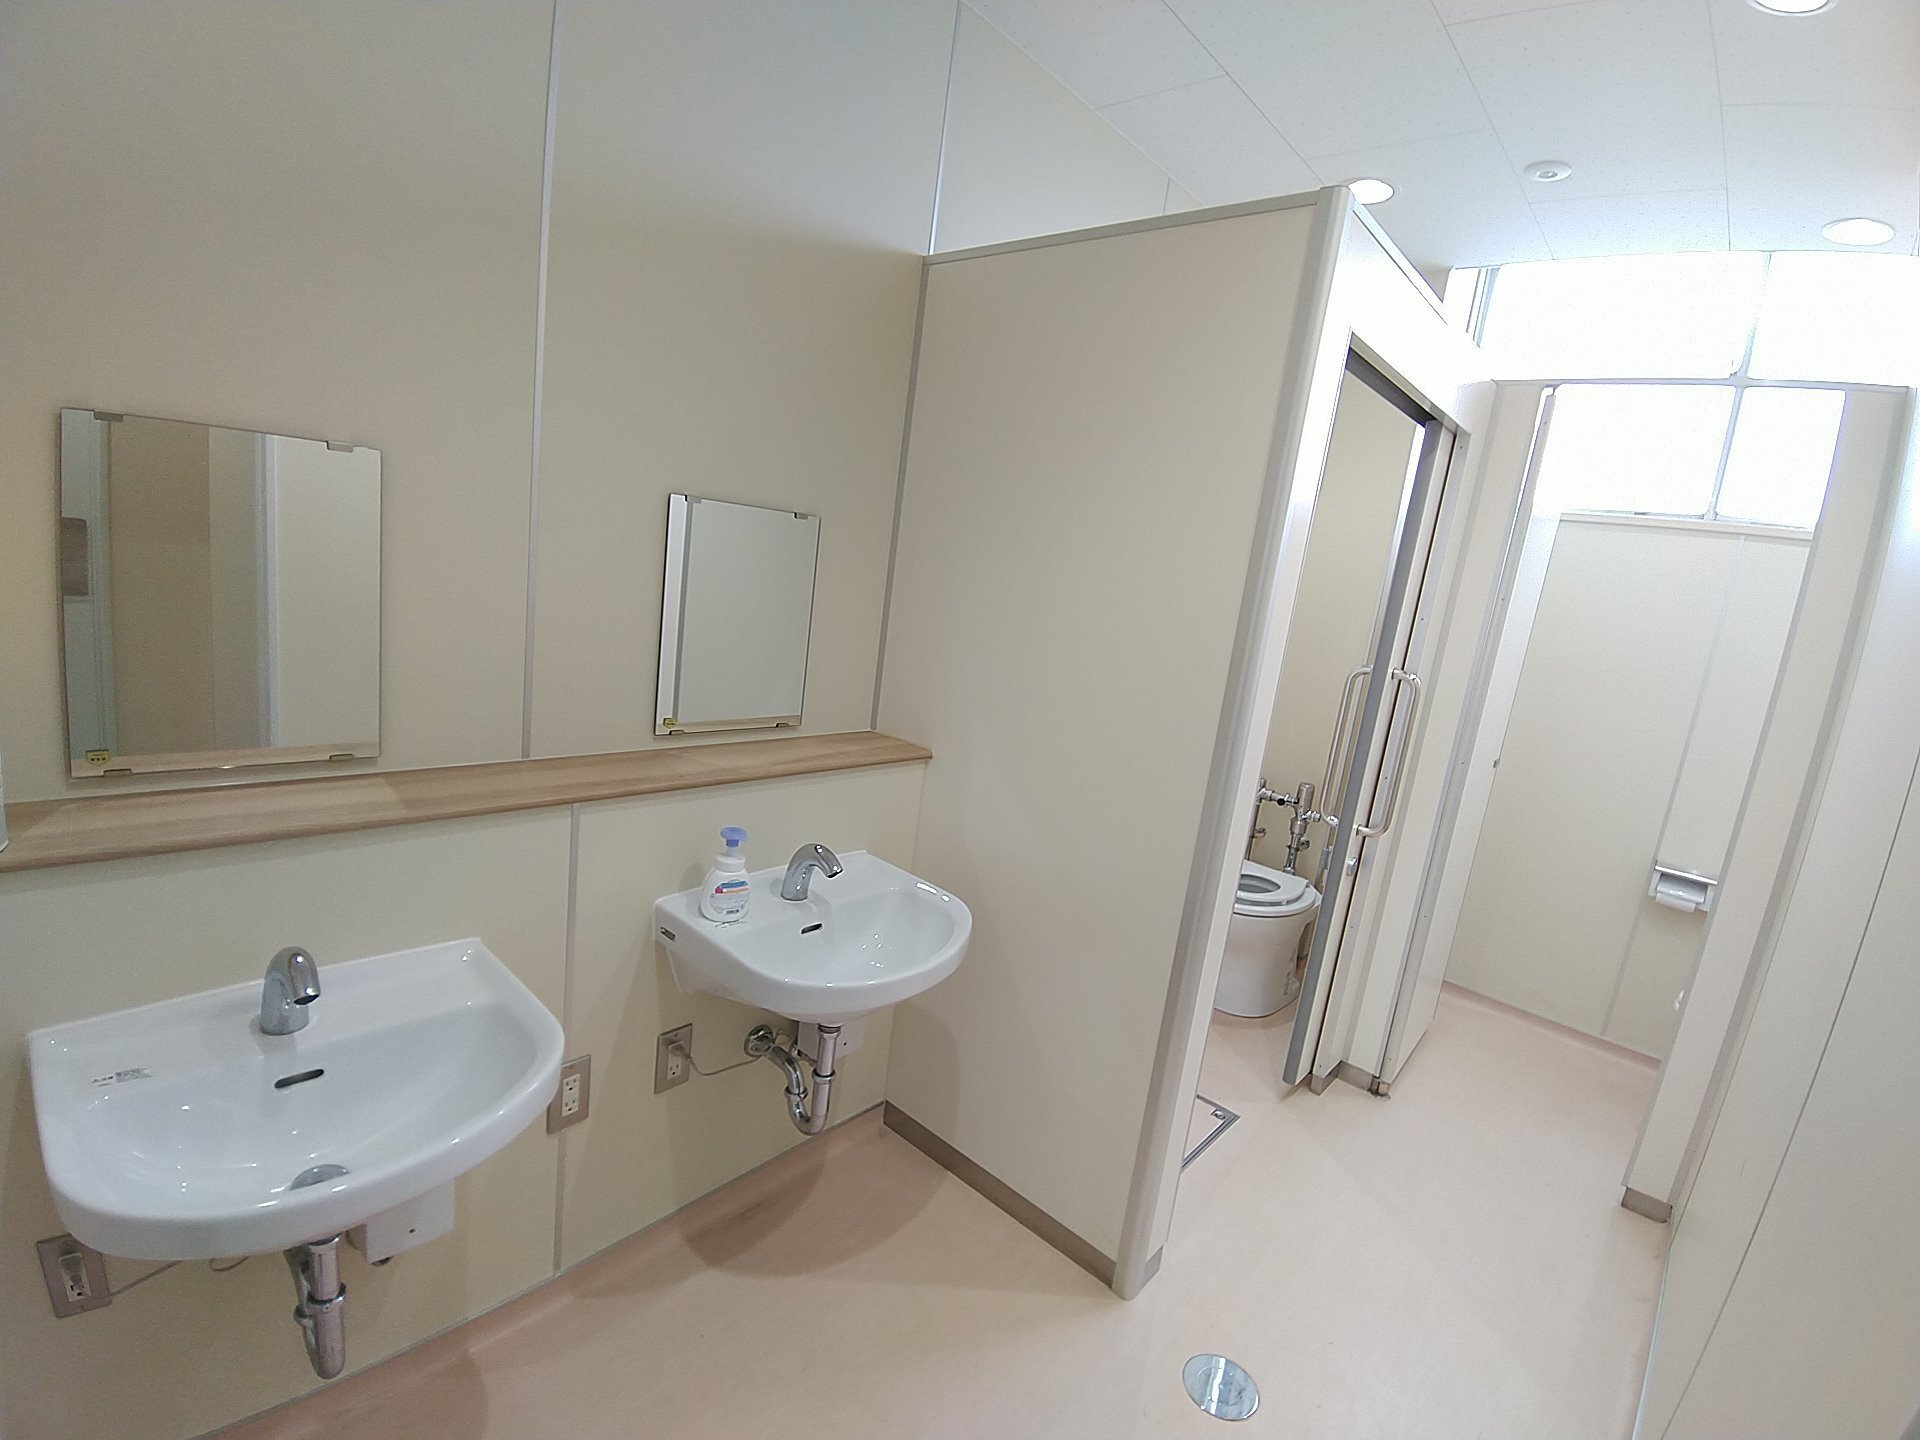 洗面台が2つあり、その上に鏡が設置され、奥に様式トイレがある女子トイレを入り口から写した写真